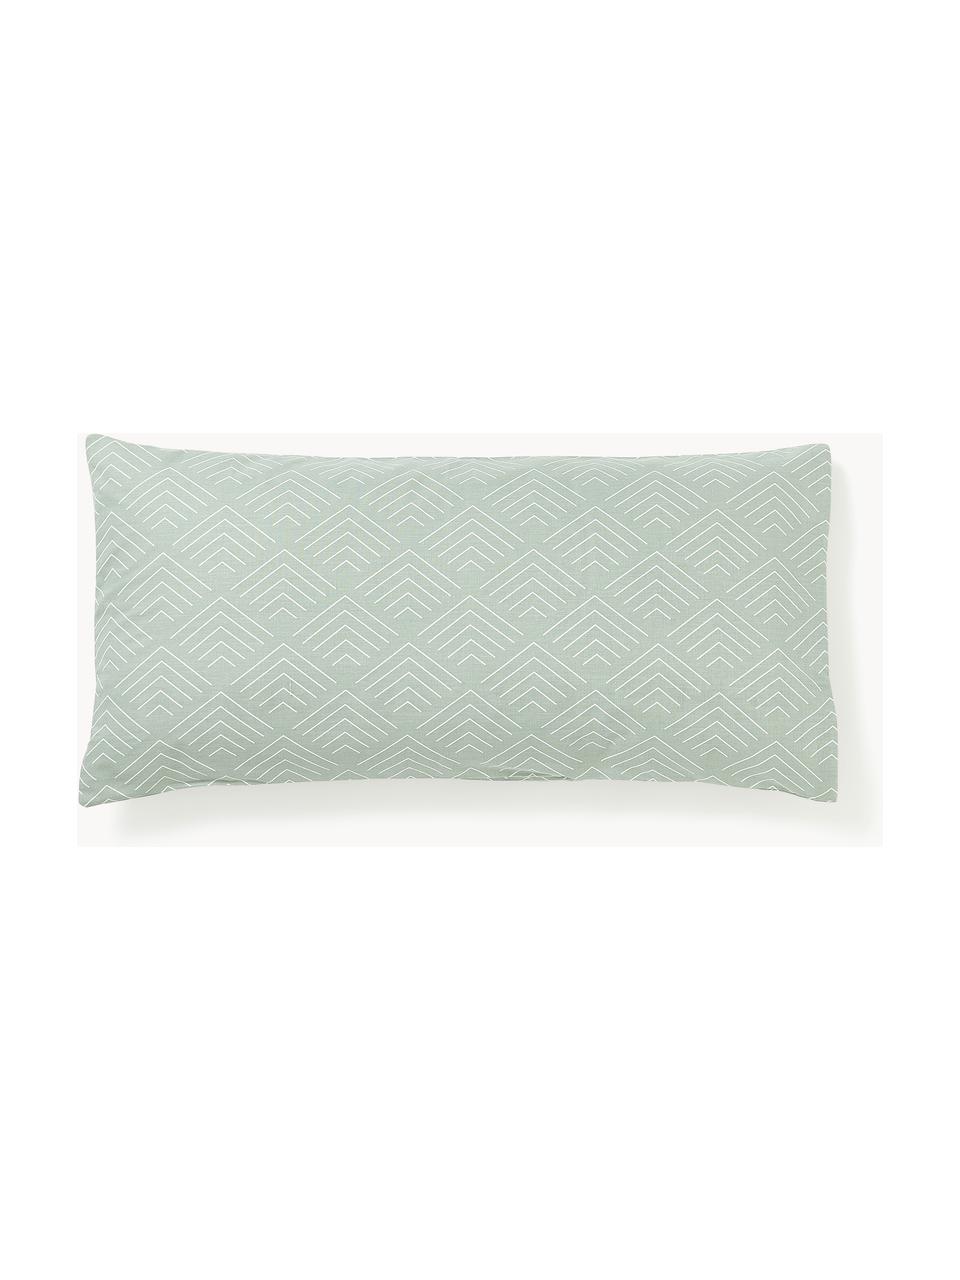 Poszewka na poduszkę z bawełny Milano, Szałwiowy zielony, S 40 x D 80 cm